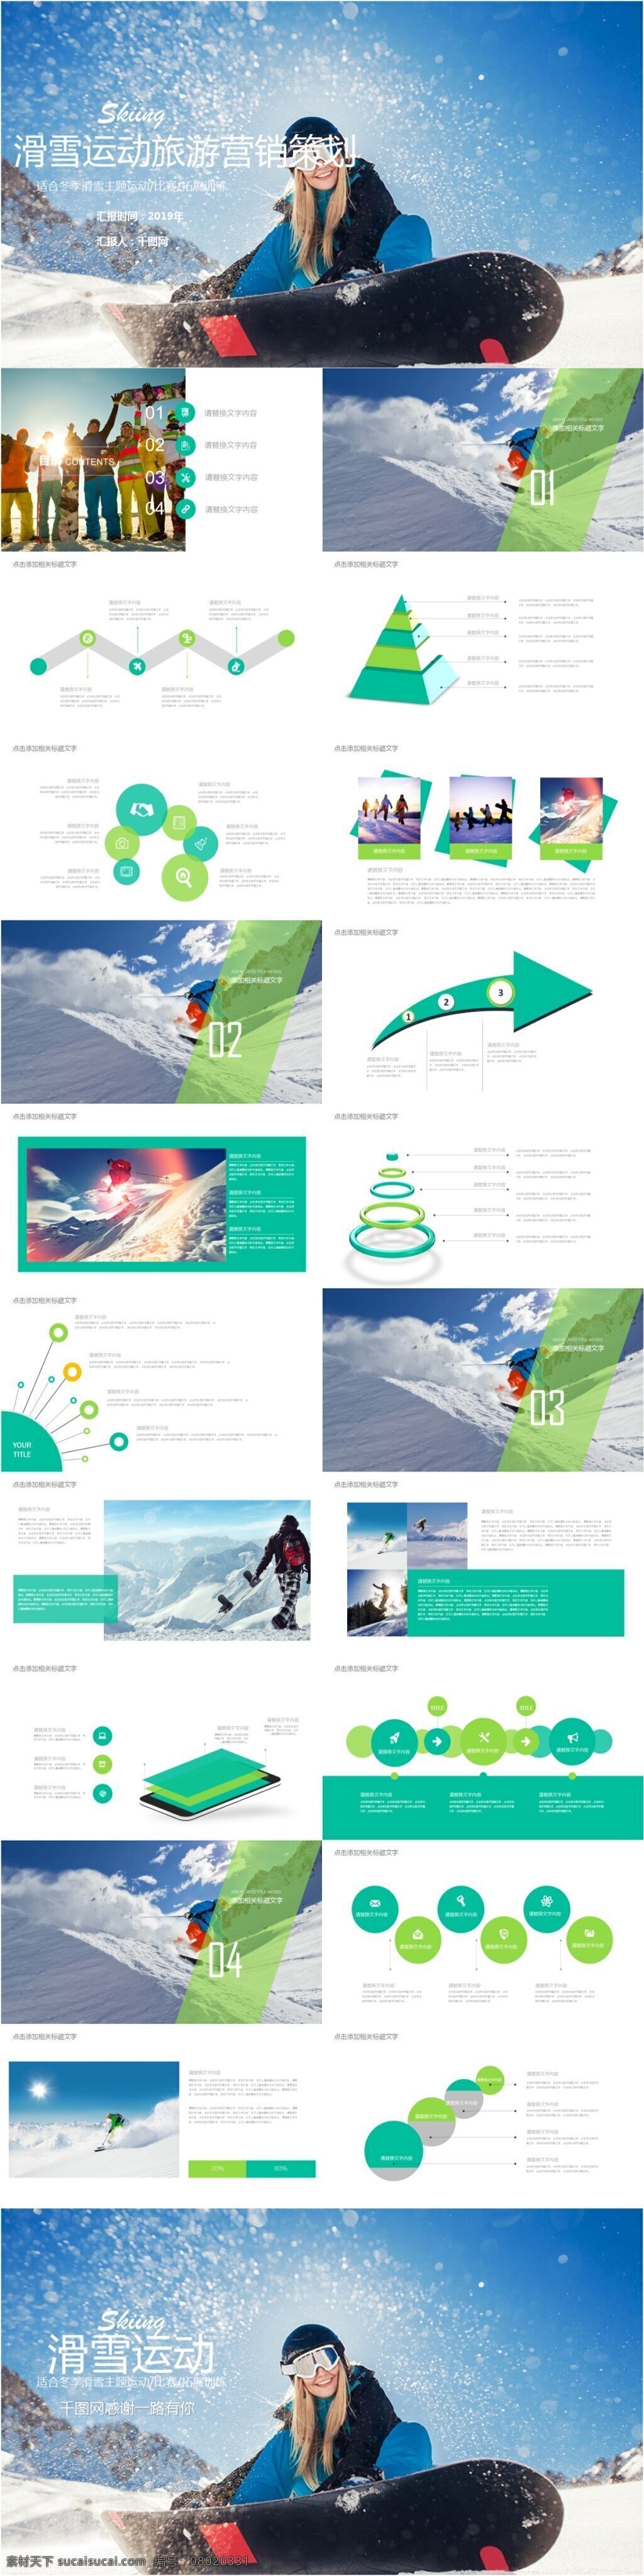 冬季 滑雪 旅游 营销策划 模板 策划书ppt 活动策划 精致ppt 商务 通用 营销ppt